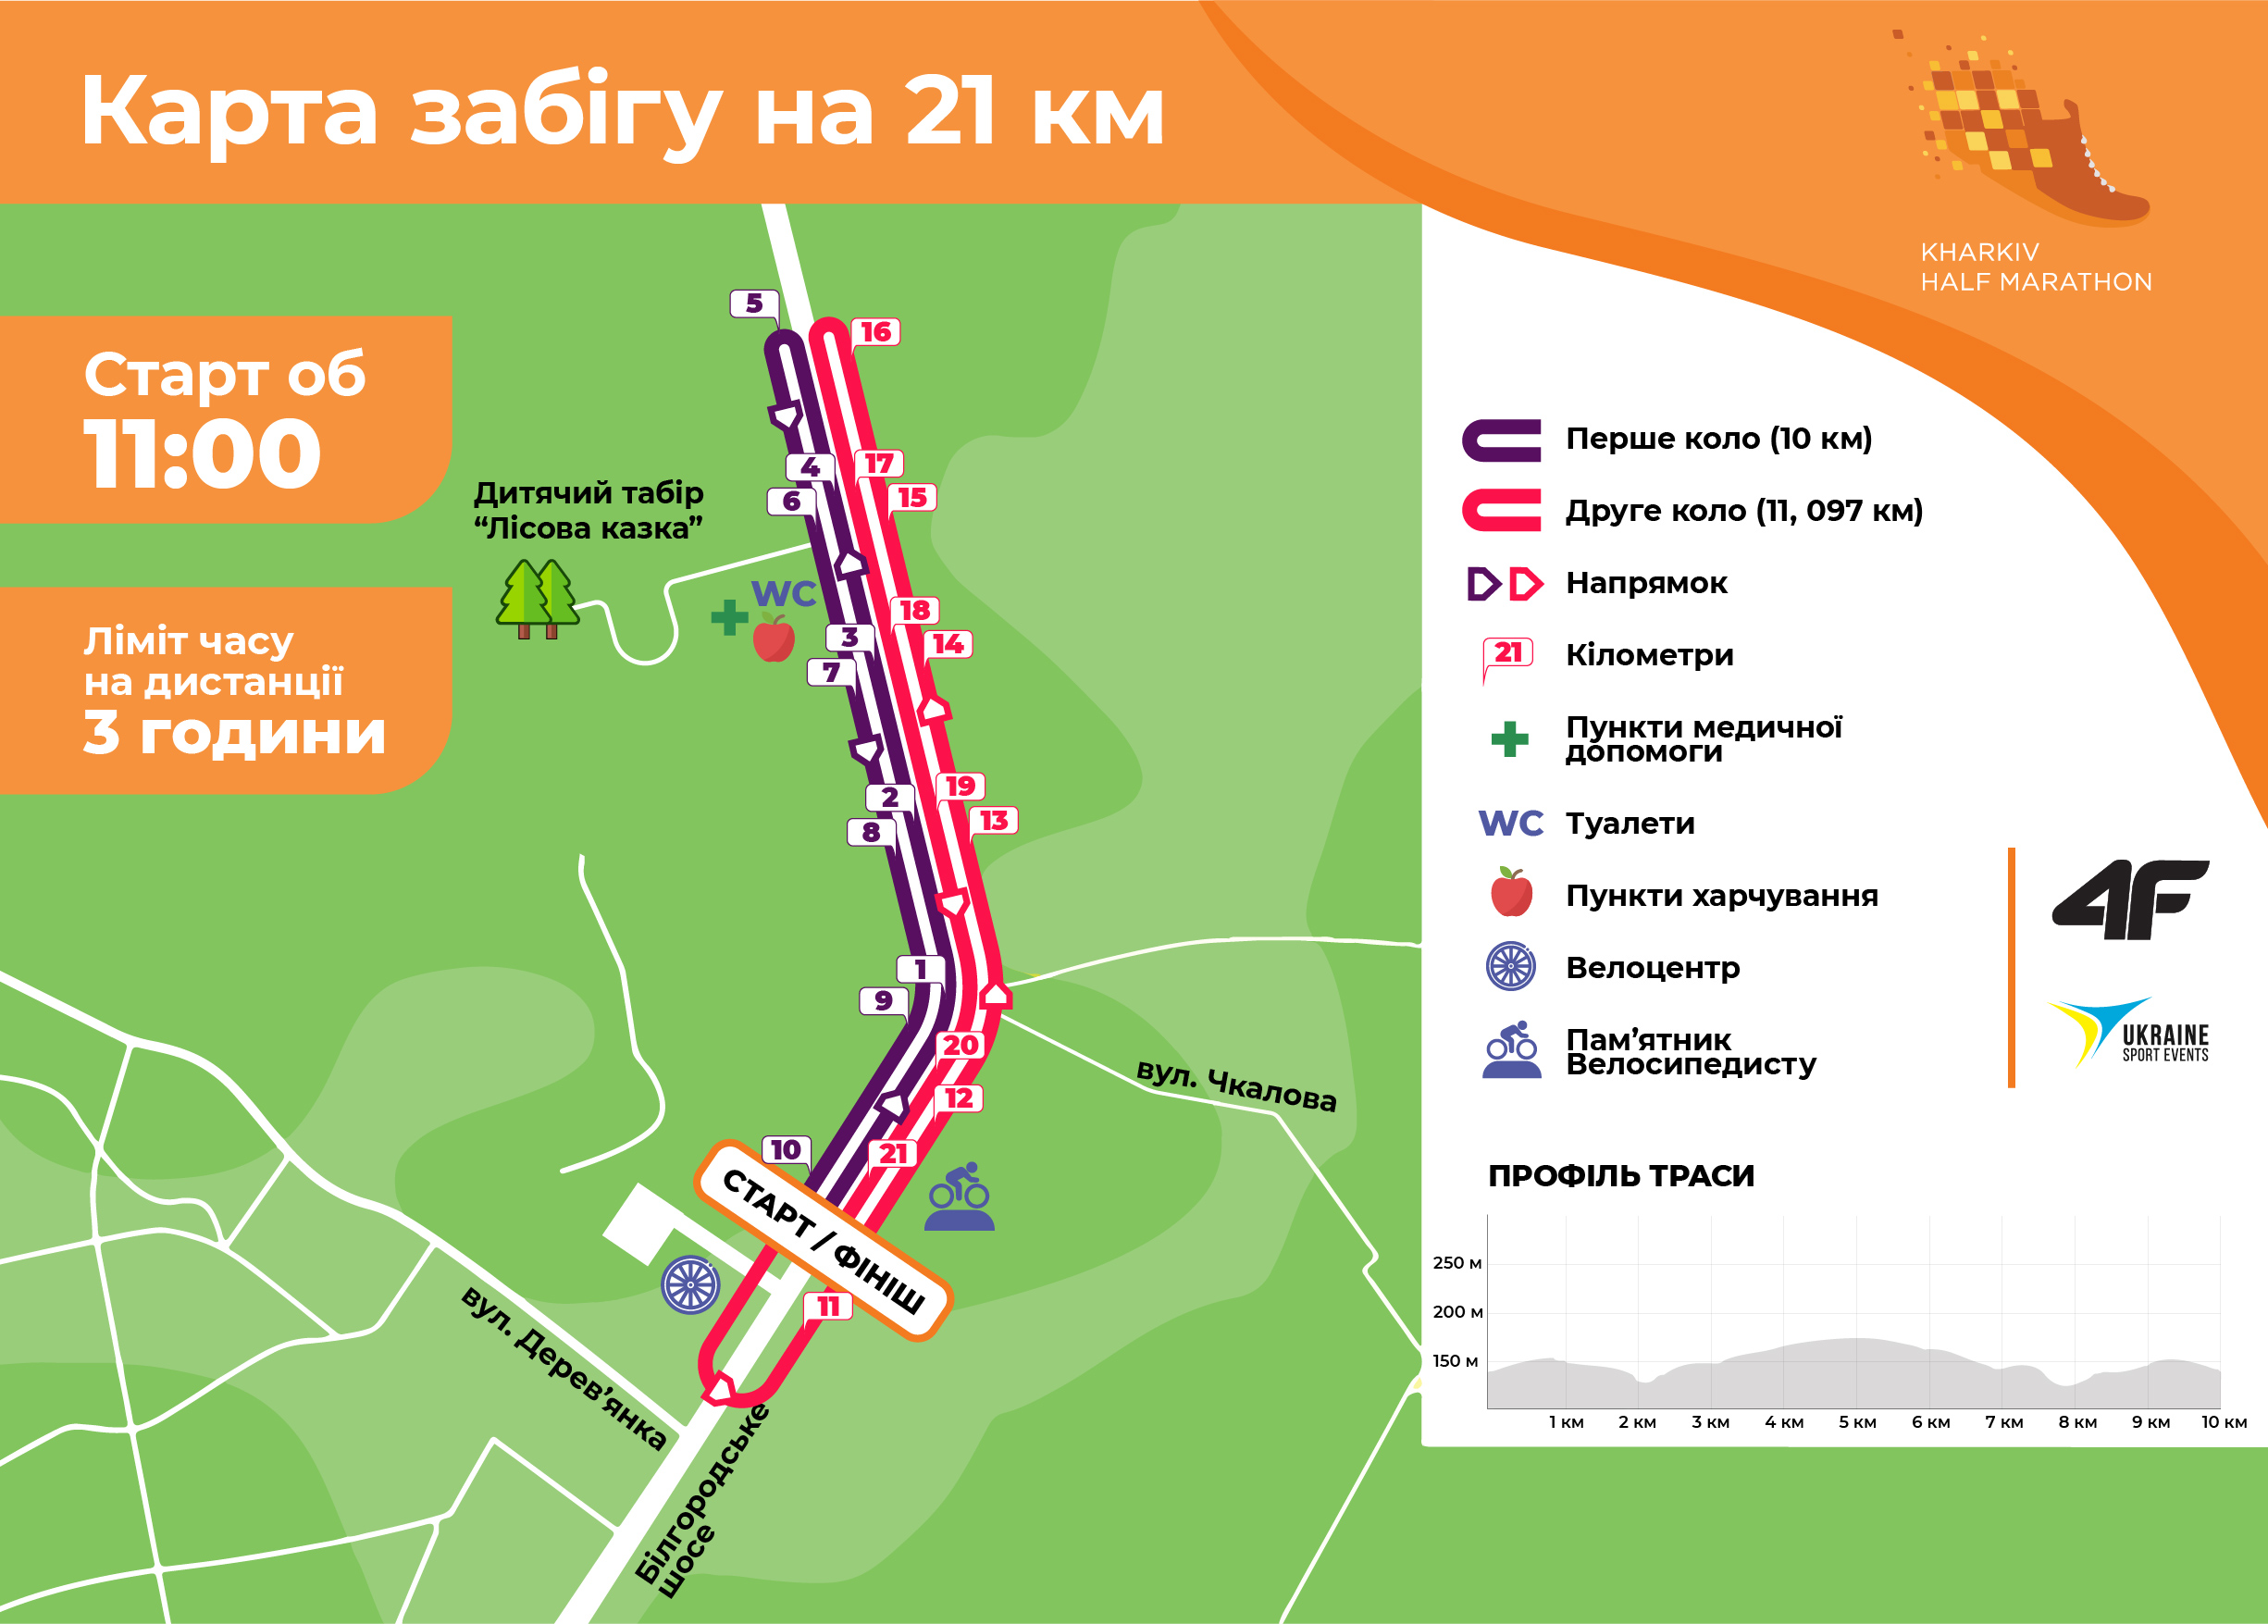 Kharkiv Half Marathon 2021